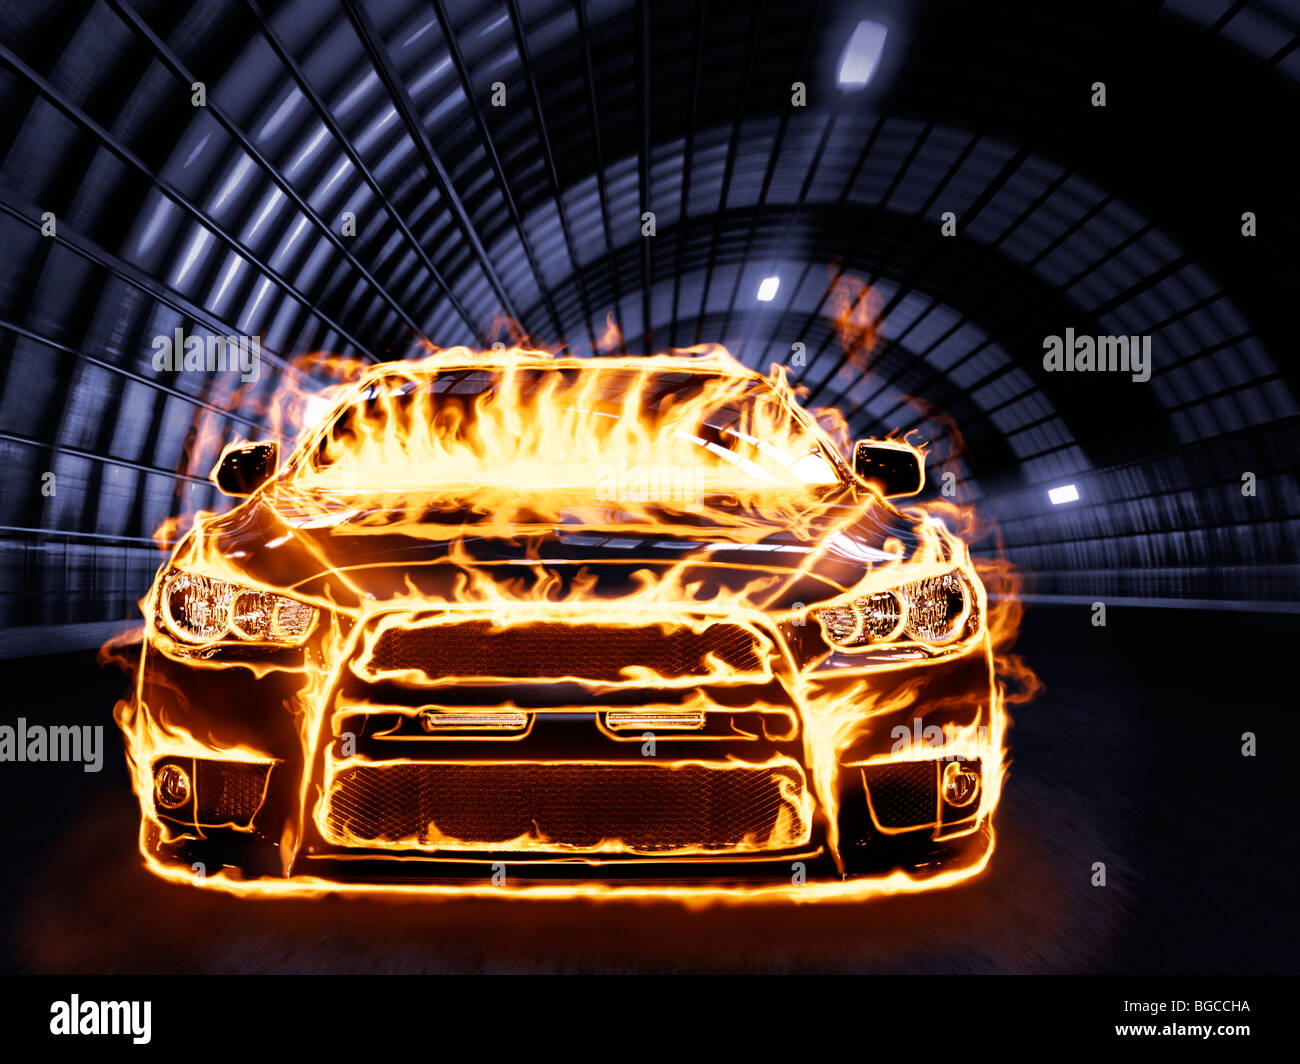 Licencia e impresiones en MaximImages.com - cubierto de llamas carreras de coches deportivos a lo largo de un túnel Foto de stock